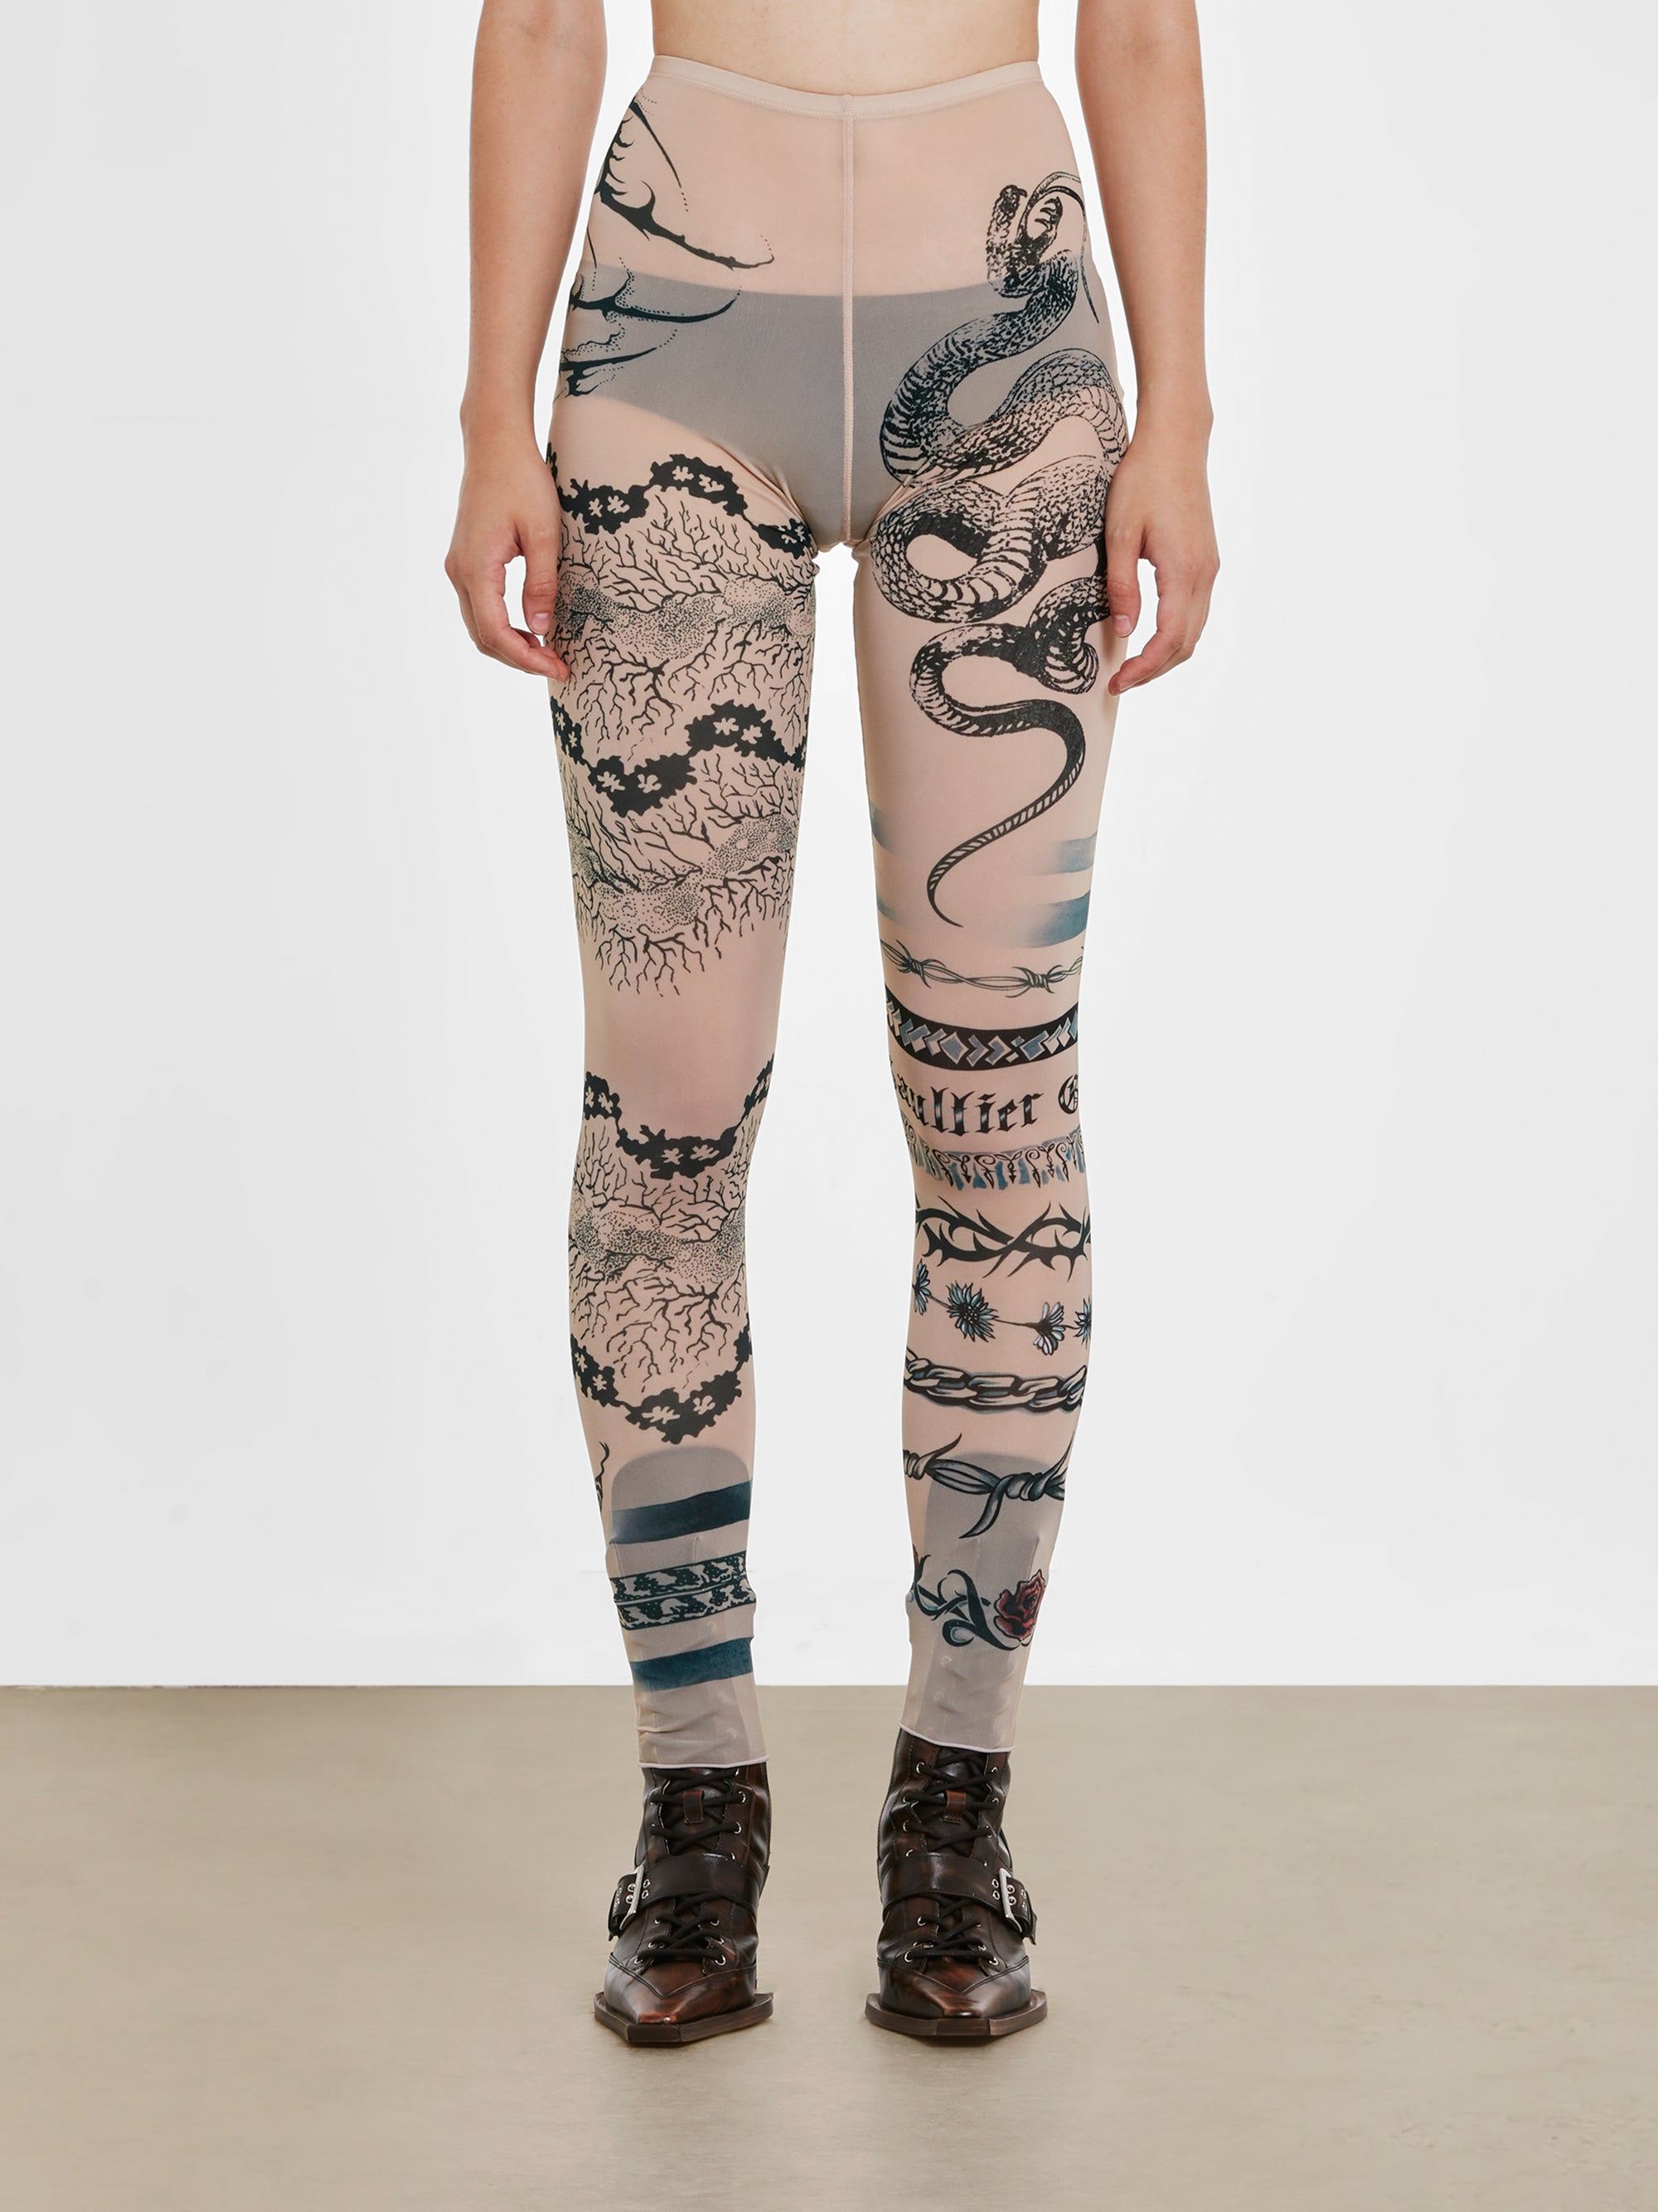 Jean Paul Gaultier - KNWLS Women’s Trompe L’Oeil Tattoo Print Leggings - (Nude/Grey/Black) view 1